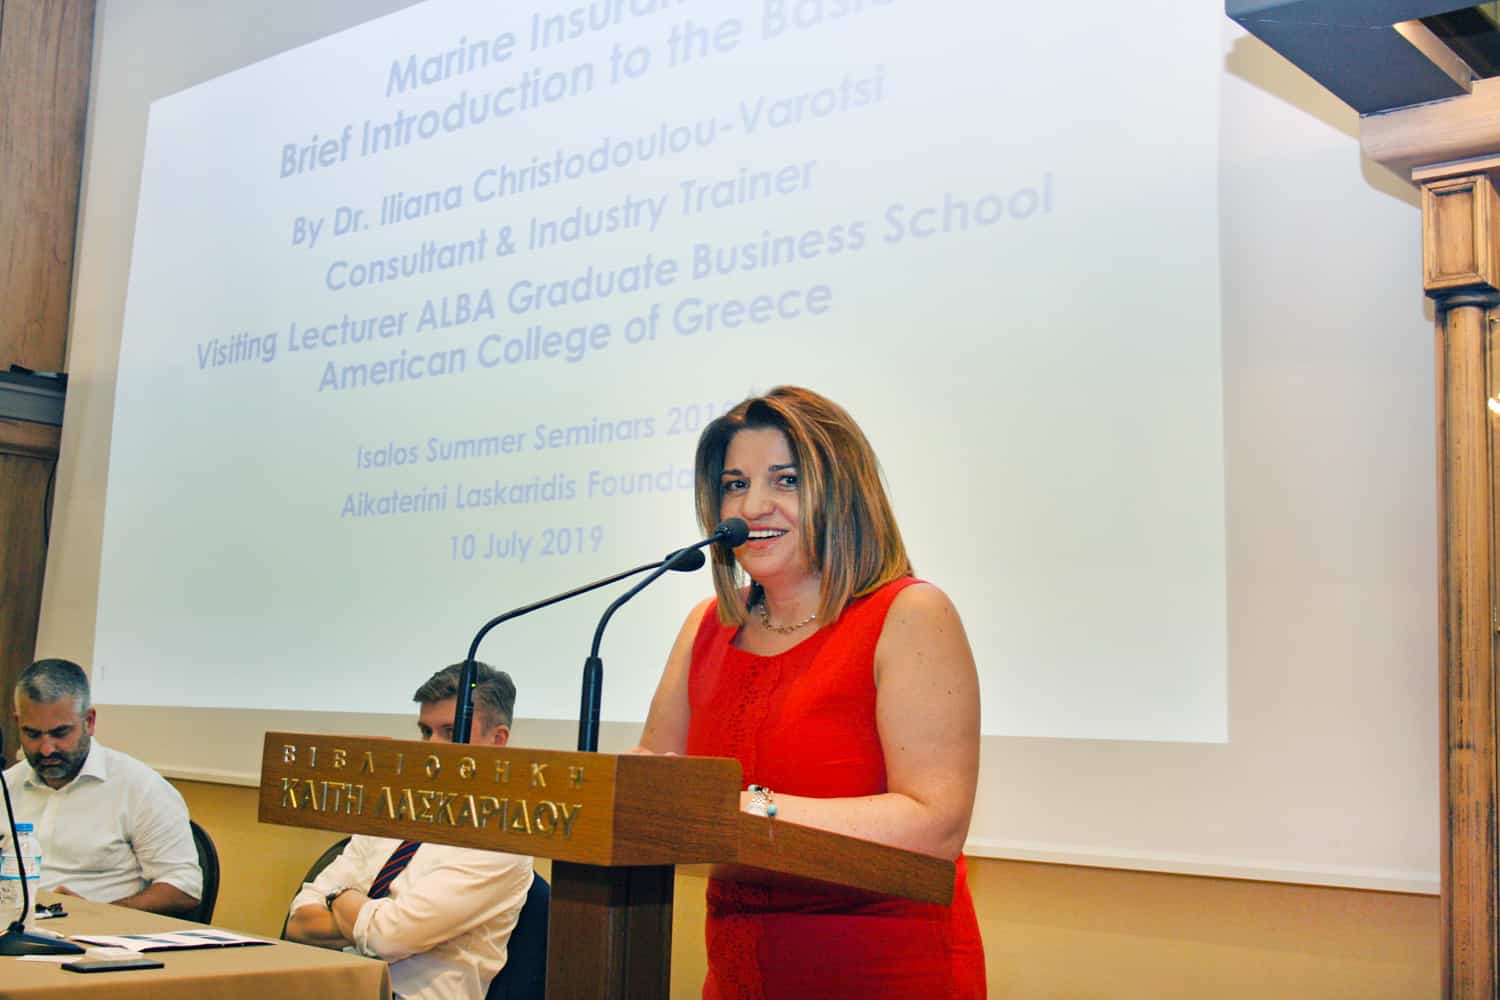 Η Δρ. Ηλιάνα Χριστοδούλου-Βαρότση, Visiting Lecturer του ALBA Graduate Business School